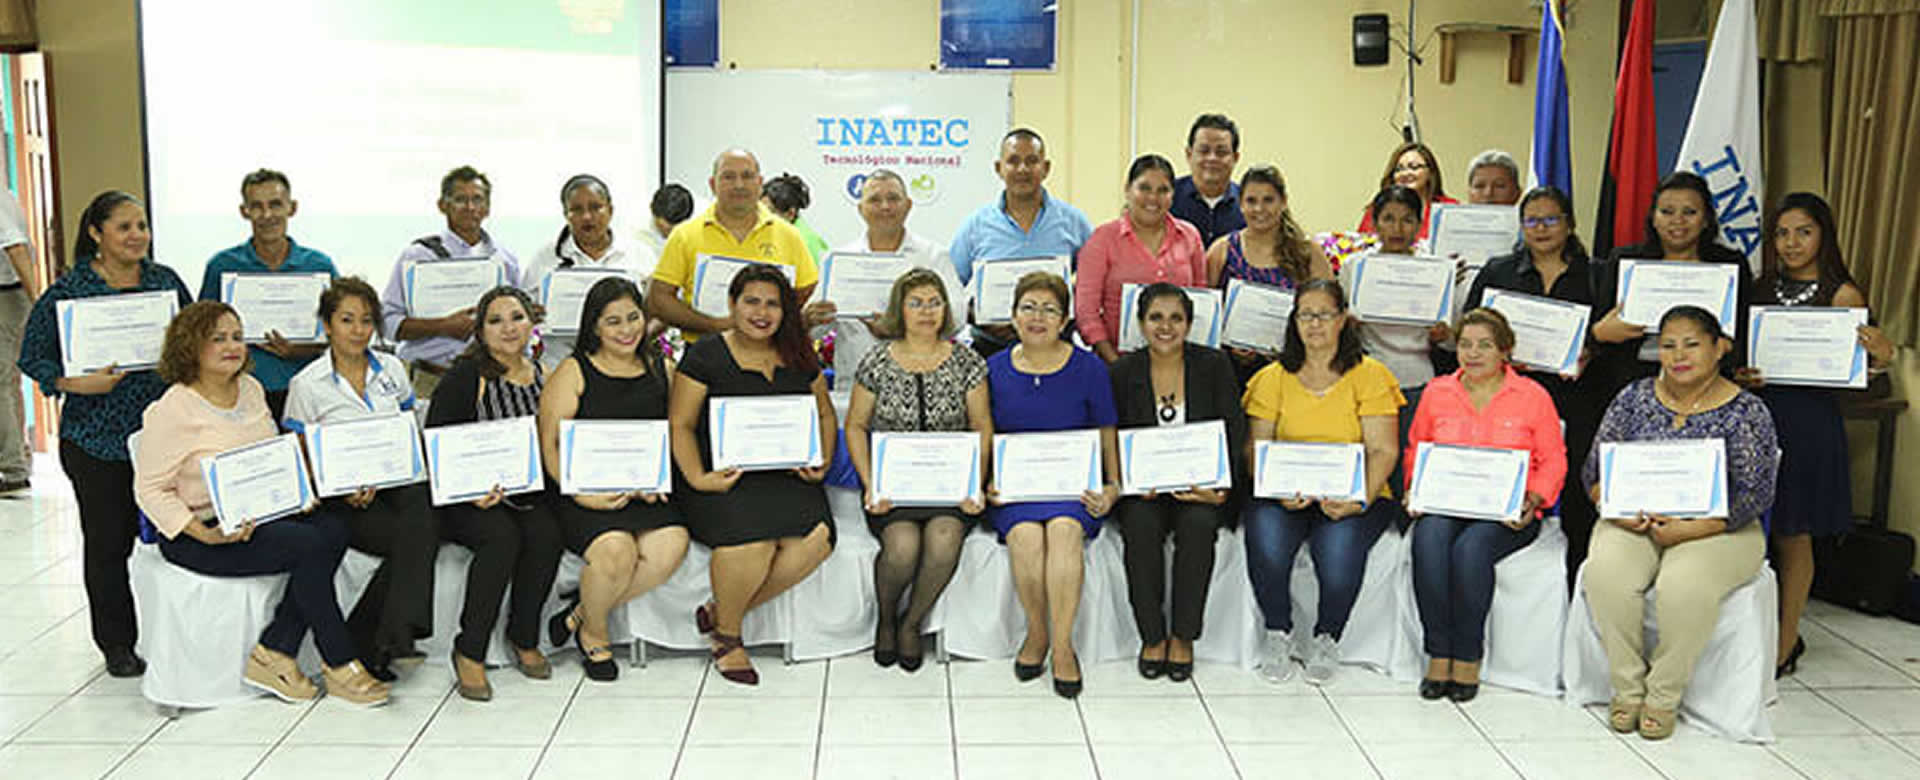 INATEC entrega certificados a más de 600 Facilitadores de la Formación Profesional